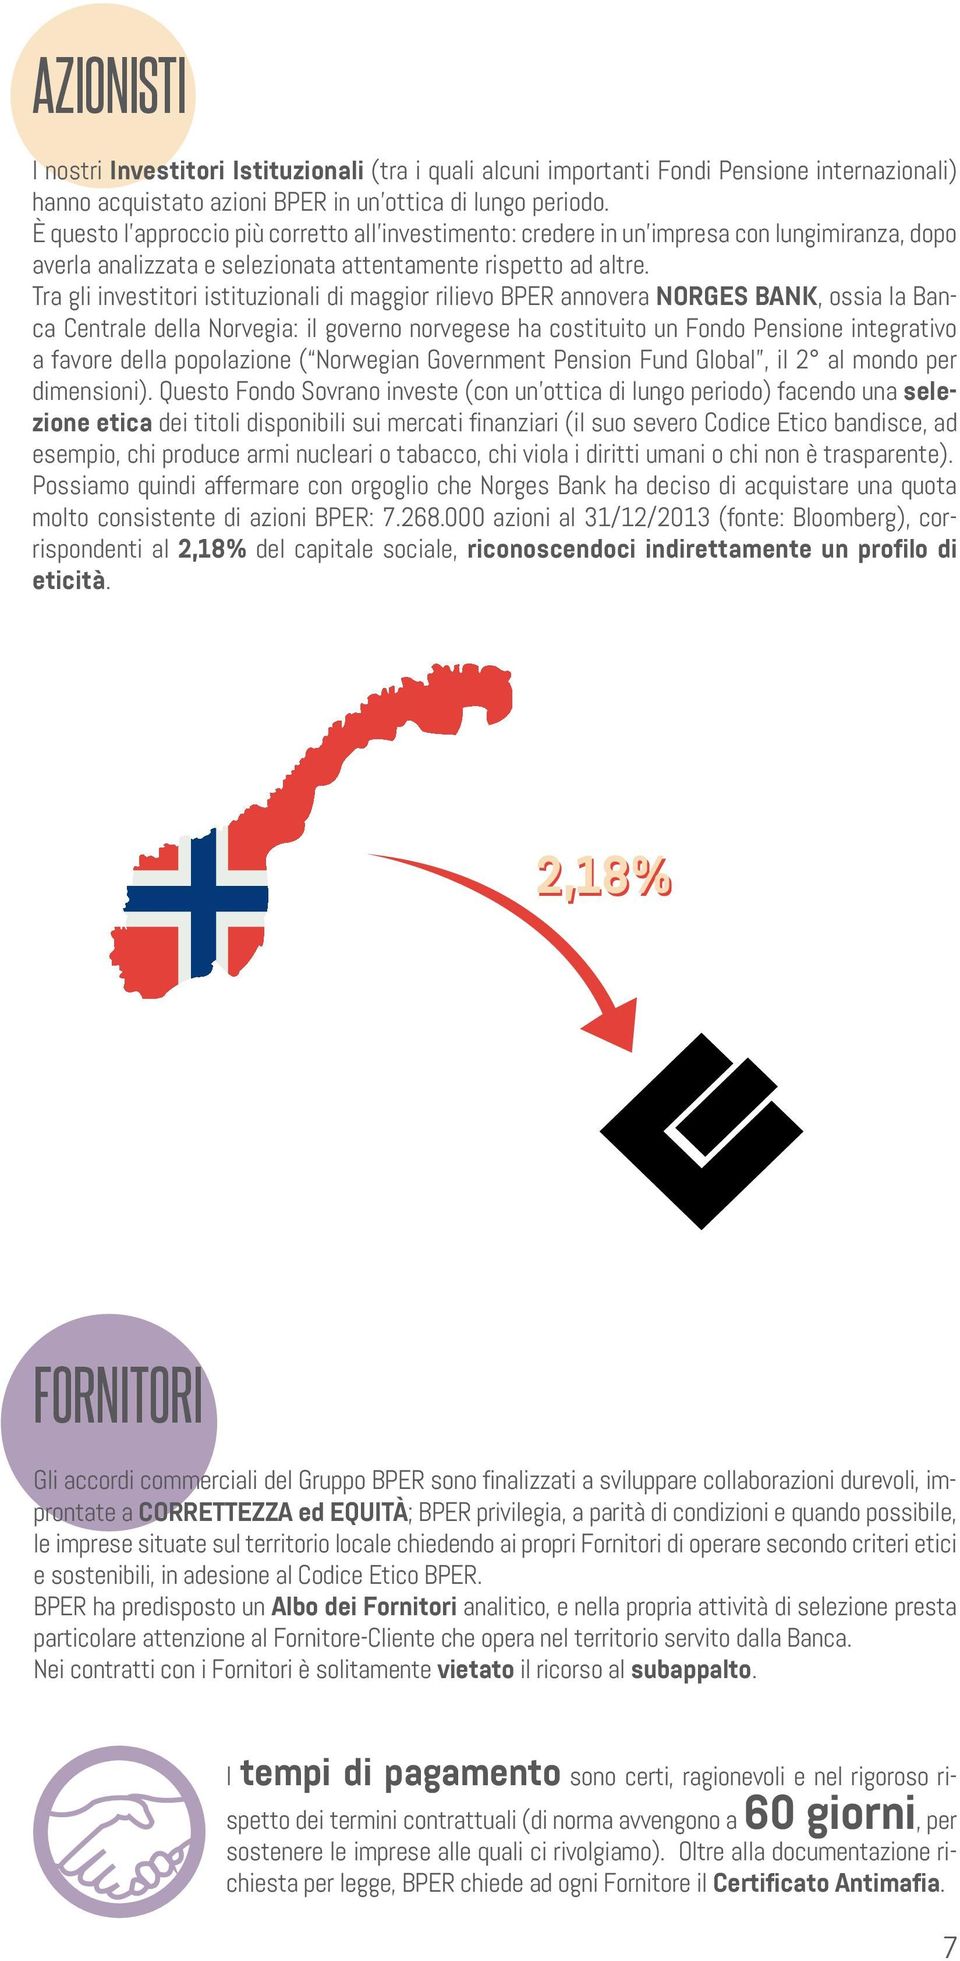 Tra gli investitori istituzionali di maggior rilievo BPER annovera NORGES BANK, ossia la Banca Centrale della Norvegia: il governo norvegese ha costituito un Fondo Pensione integrativo a favore della